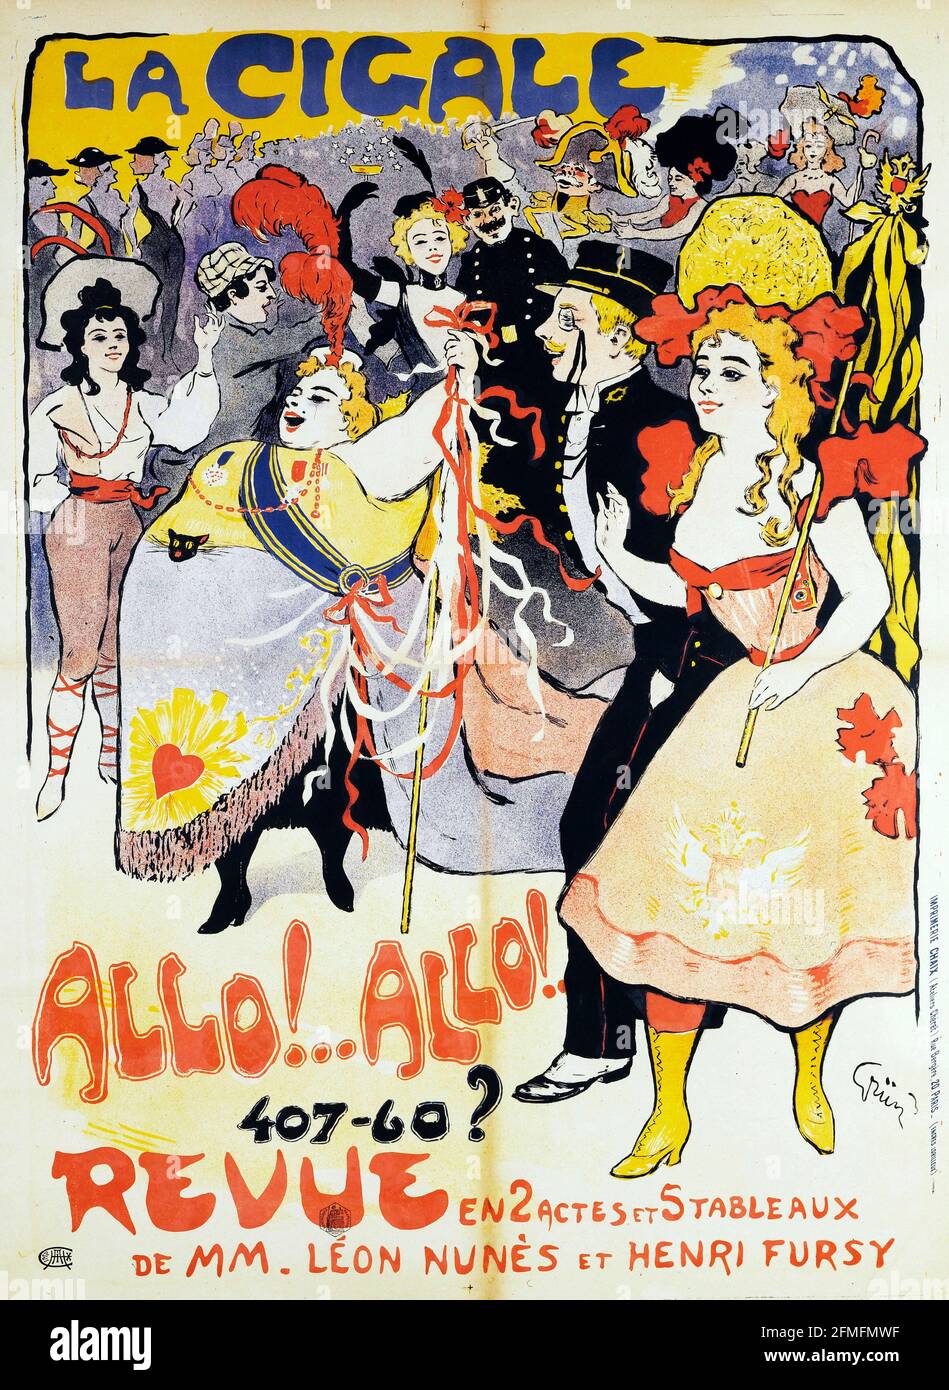 Jules Alexandre Grün (1868-1938). Imprimerie Chaix. La Cigale, Allo !...Allo ! 407-60?, Revue. Cartel. 1900. París, cartel de Belle époque. Foto de stock